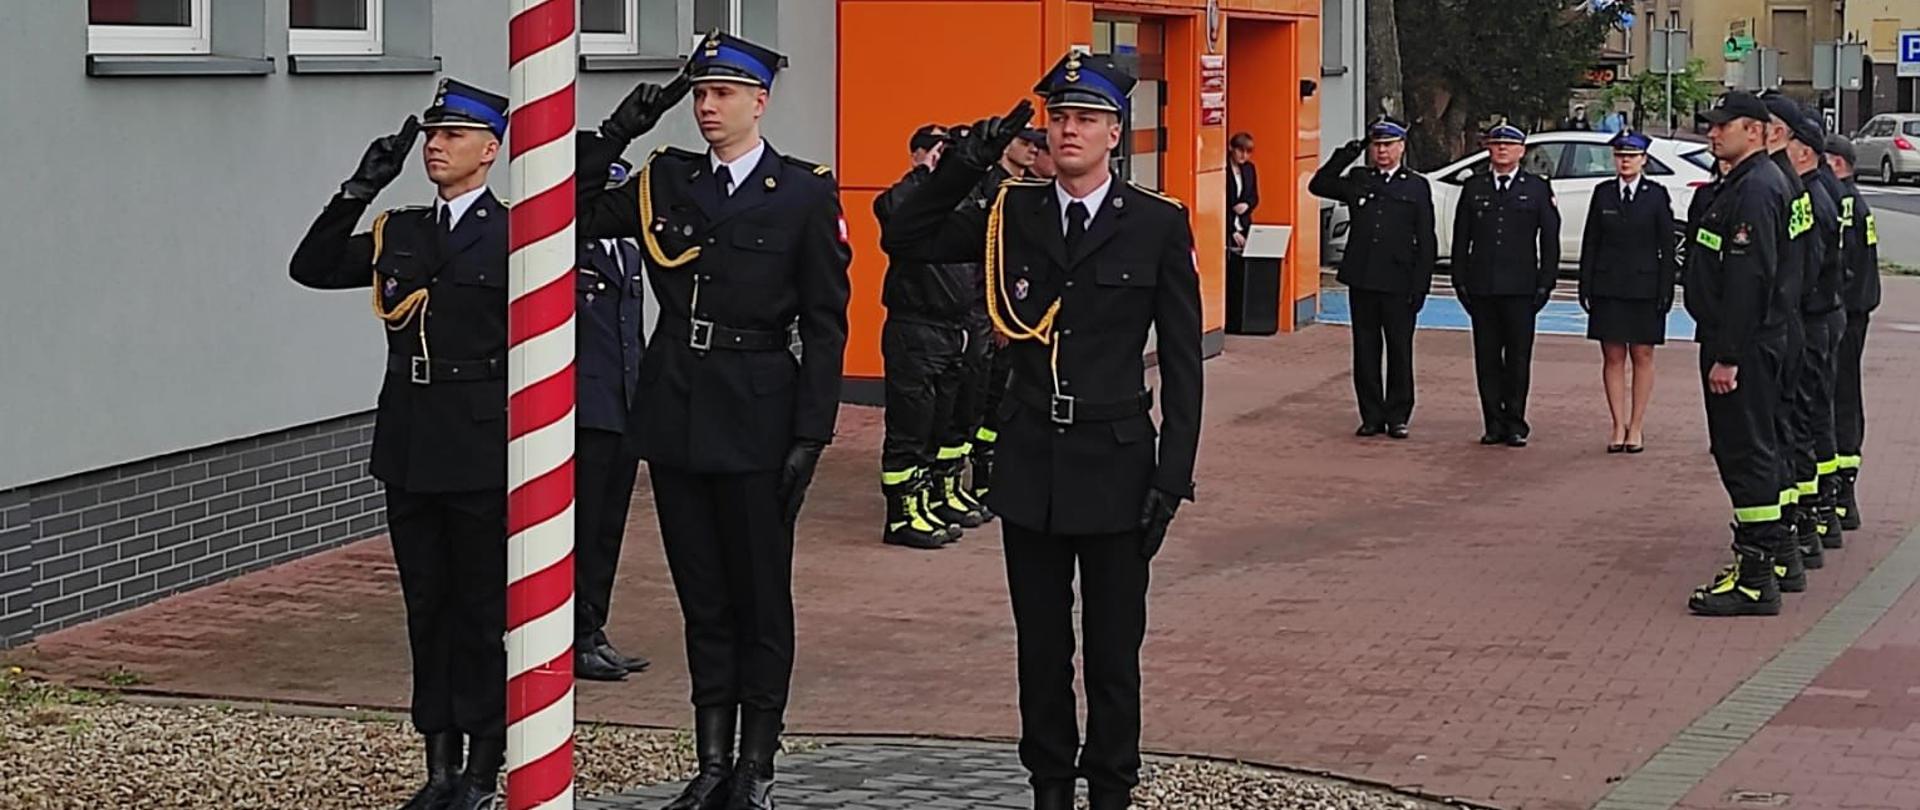 Poczet flagowy salutuje do flagi. W tle strażacy oraz budynek komendy.